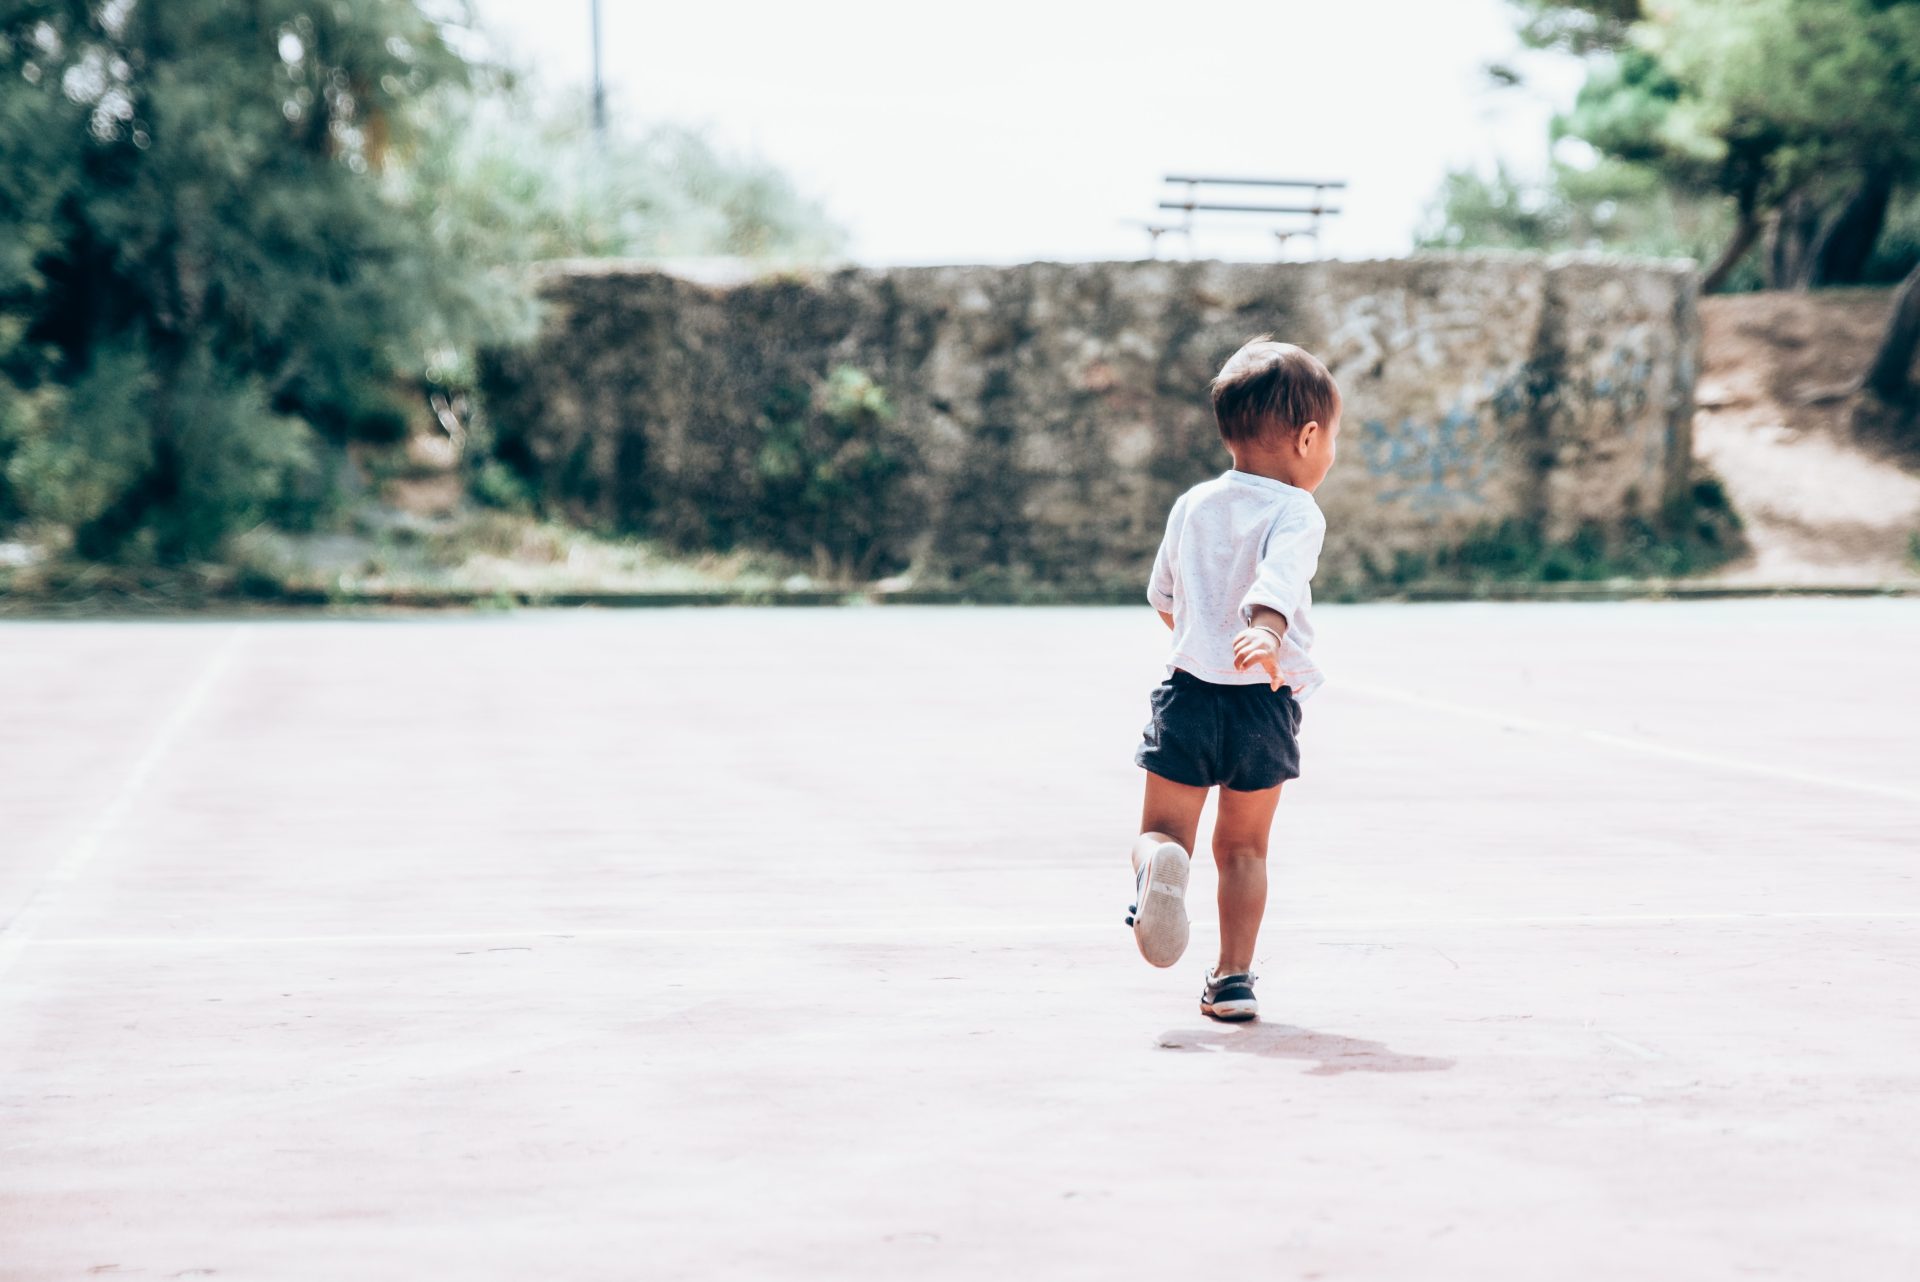 Bambino che corre per strada, foto di Guillaume de Germain su Unsplash